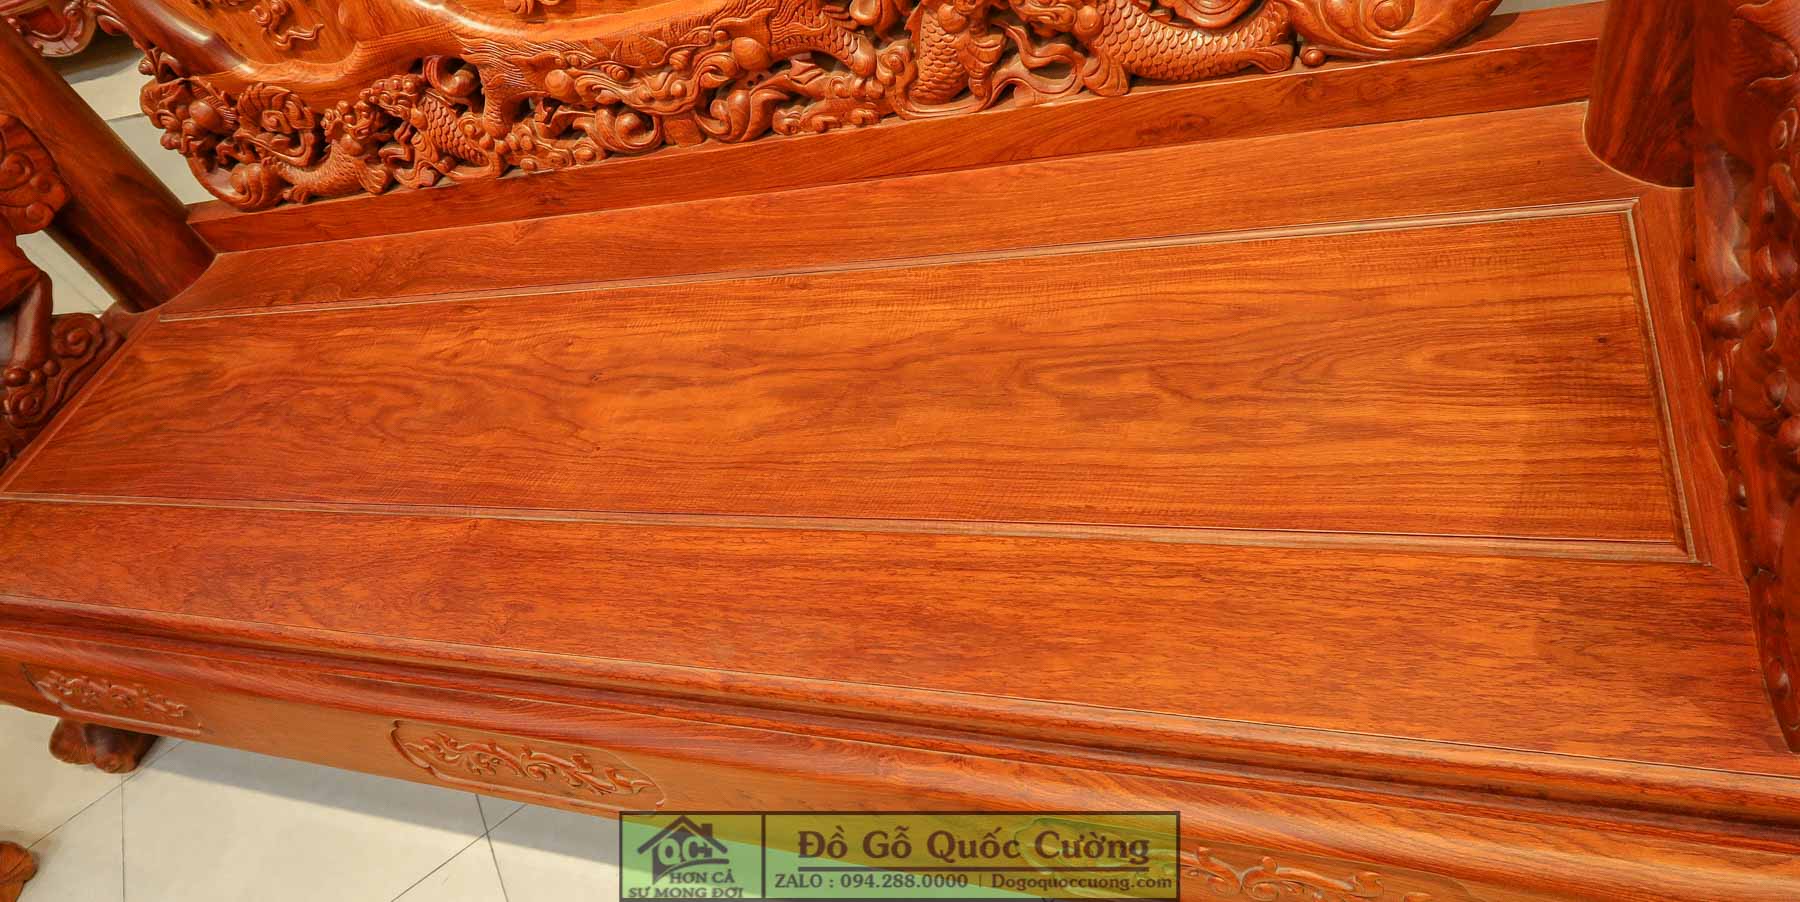 Hình ảnh chi tiết mặt lá ghế dài - là một tấm ván gỗ hương vân chọn lọc dày 2cm